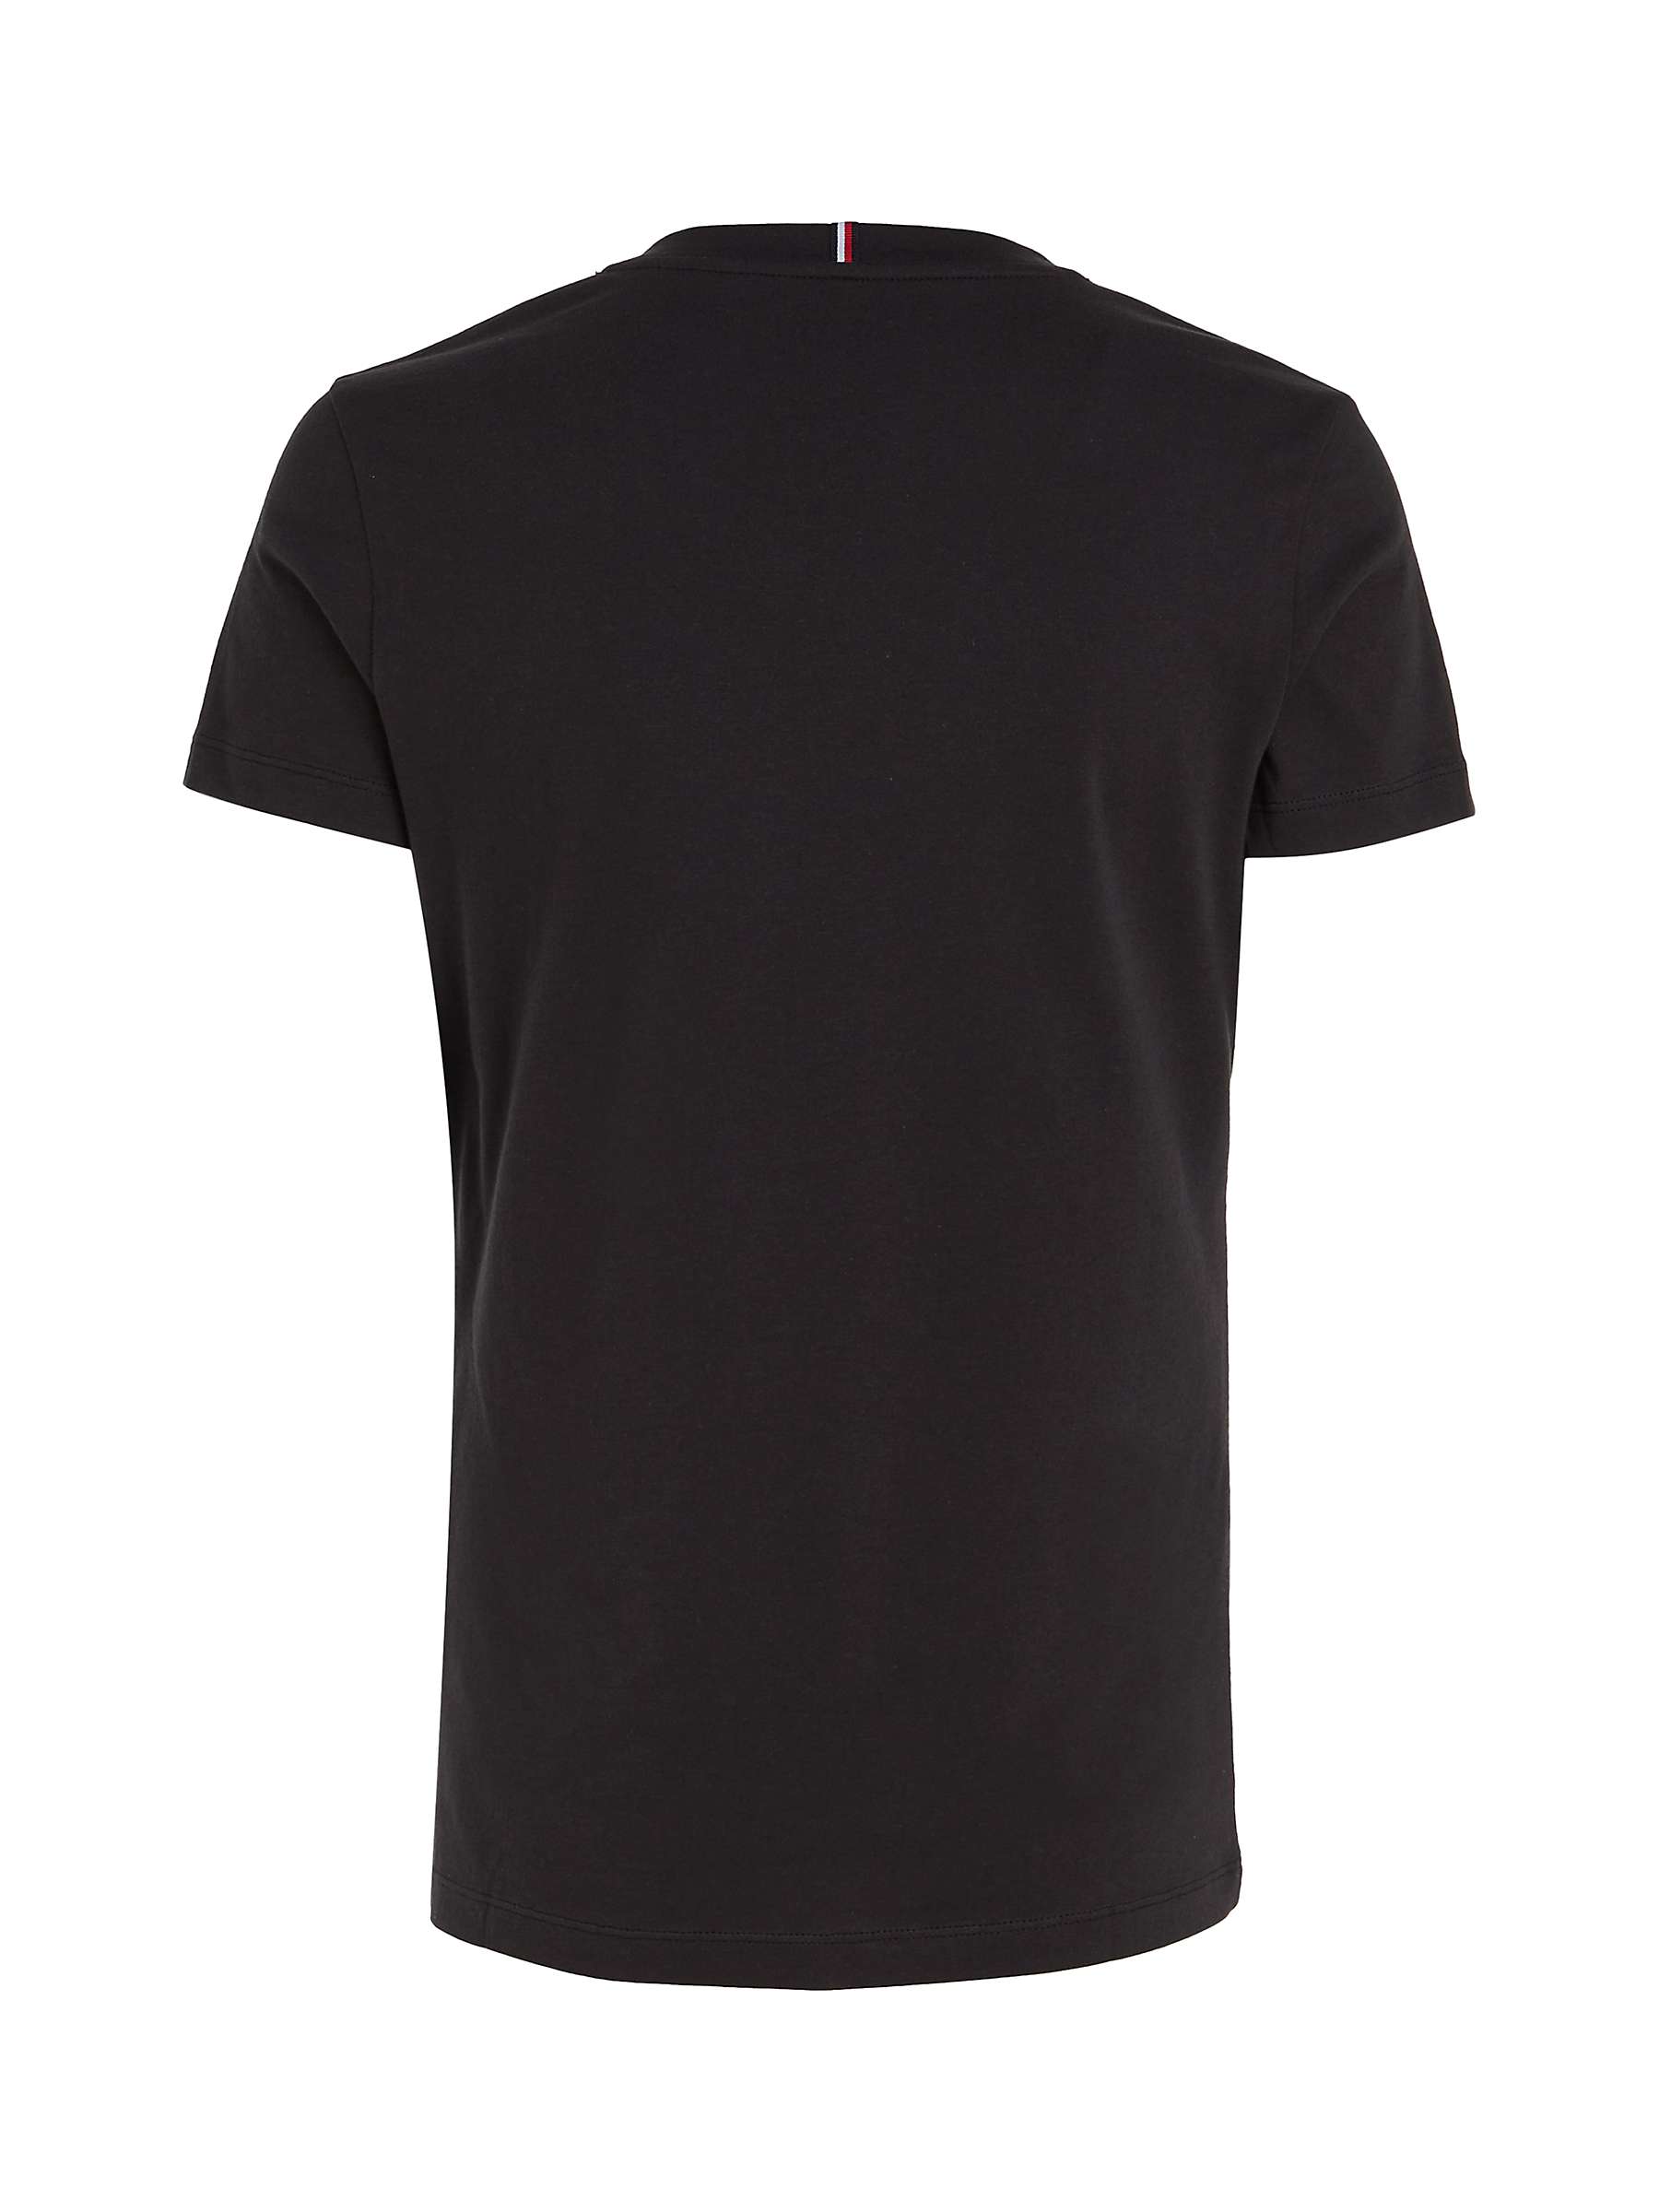 Buy Tommy Hilfiger Heritage Cotton V-Neck T-Shirt Online at johnlewis.com